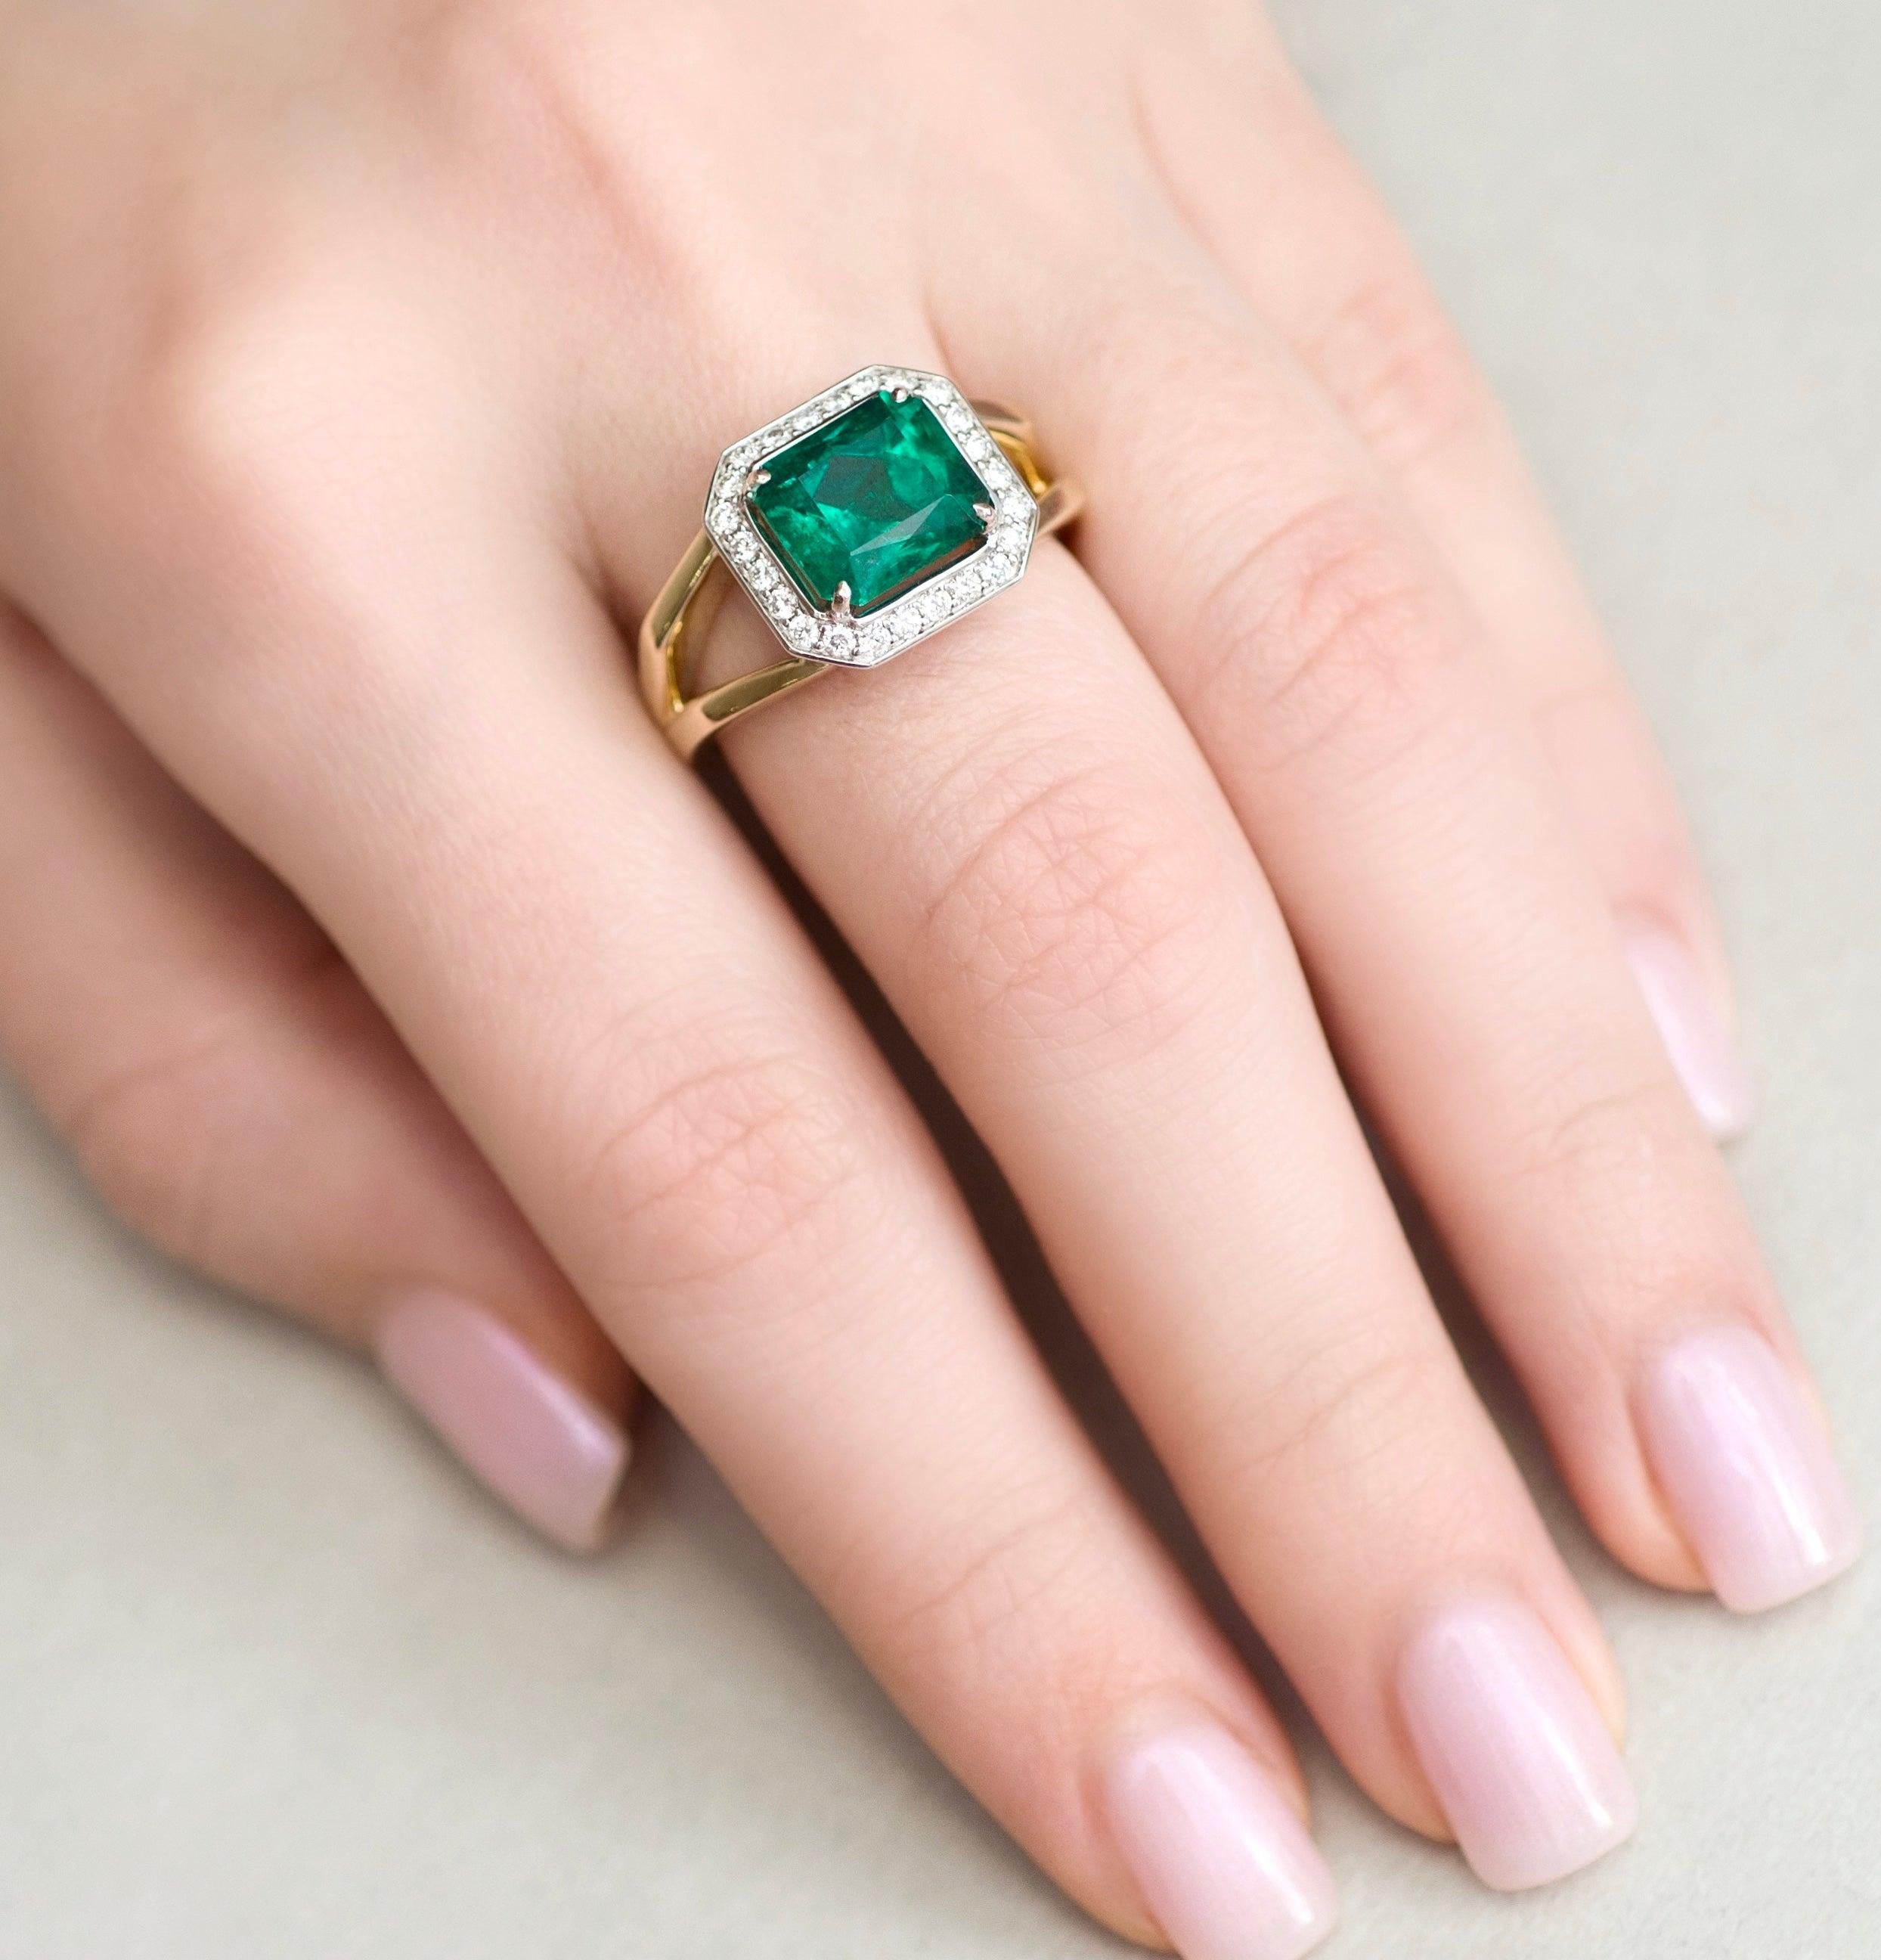 For Sale:  3 Carat Intense Green Natural Emerald Diamonds 18 Karat Yellow White Gold Ring 7